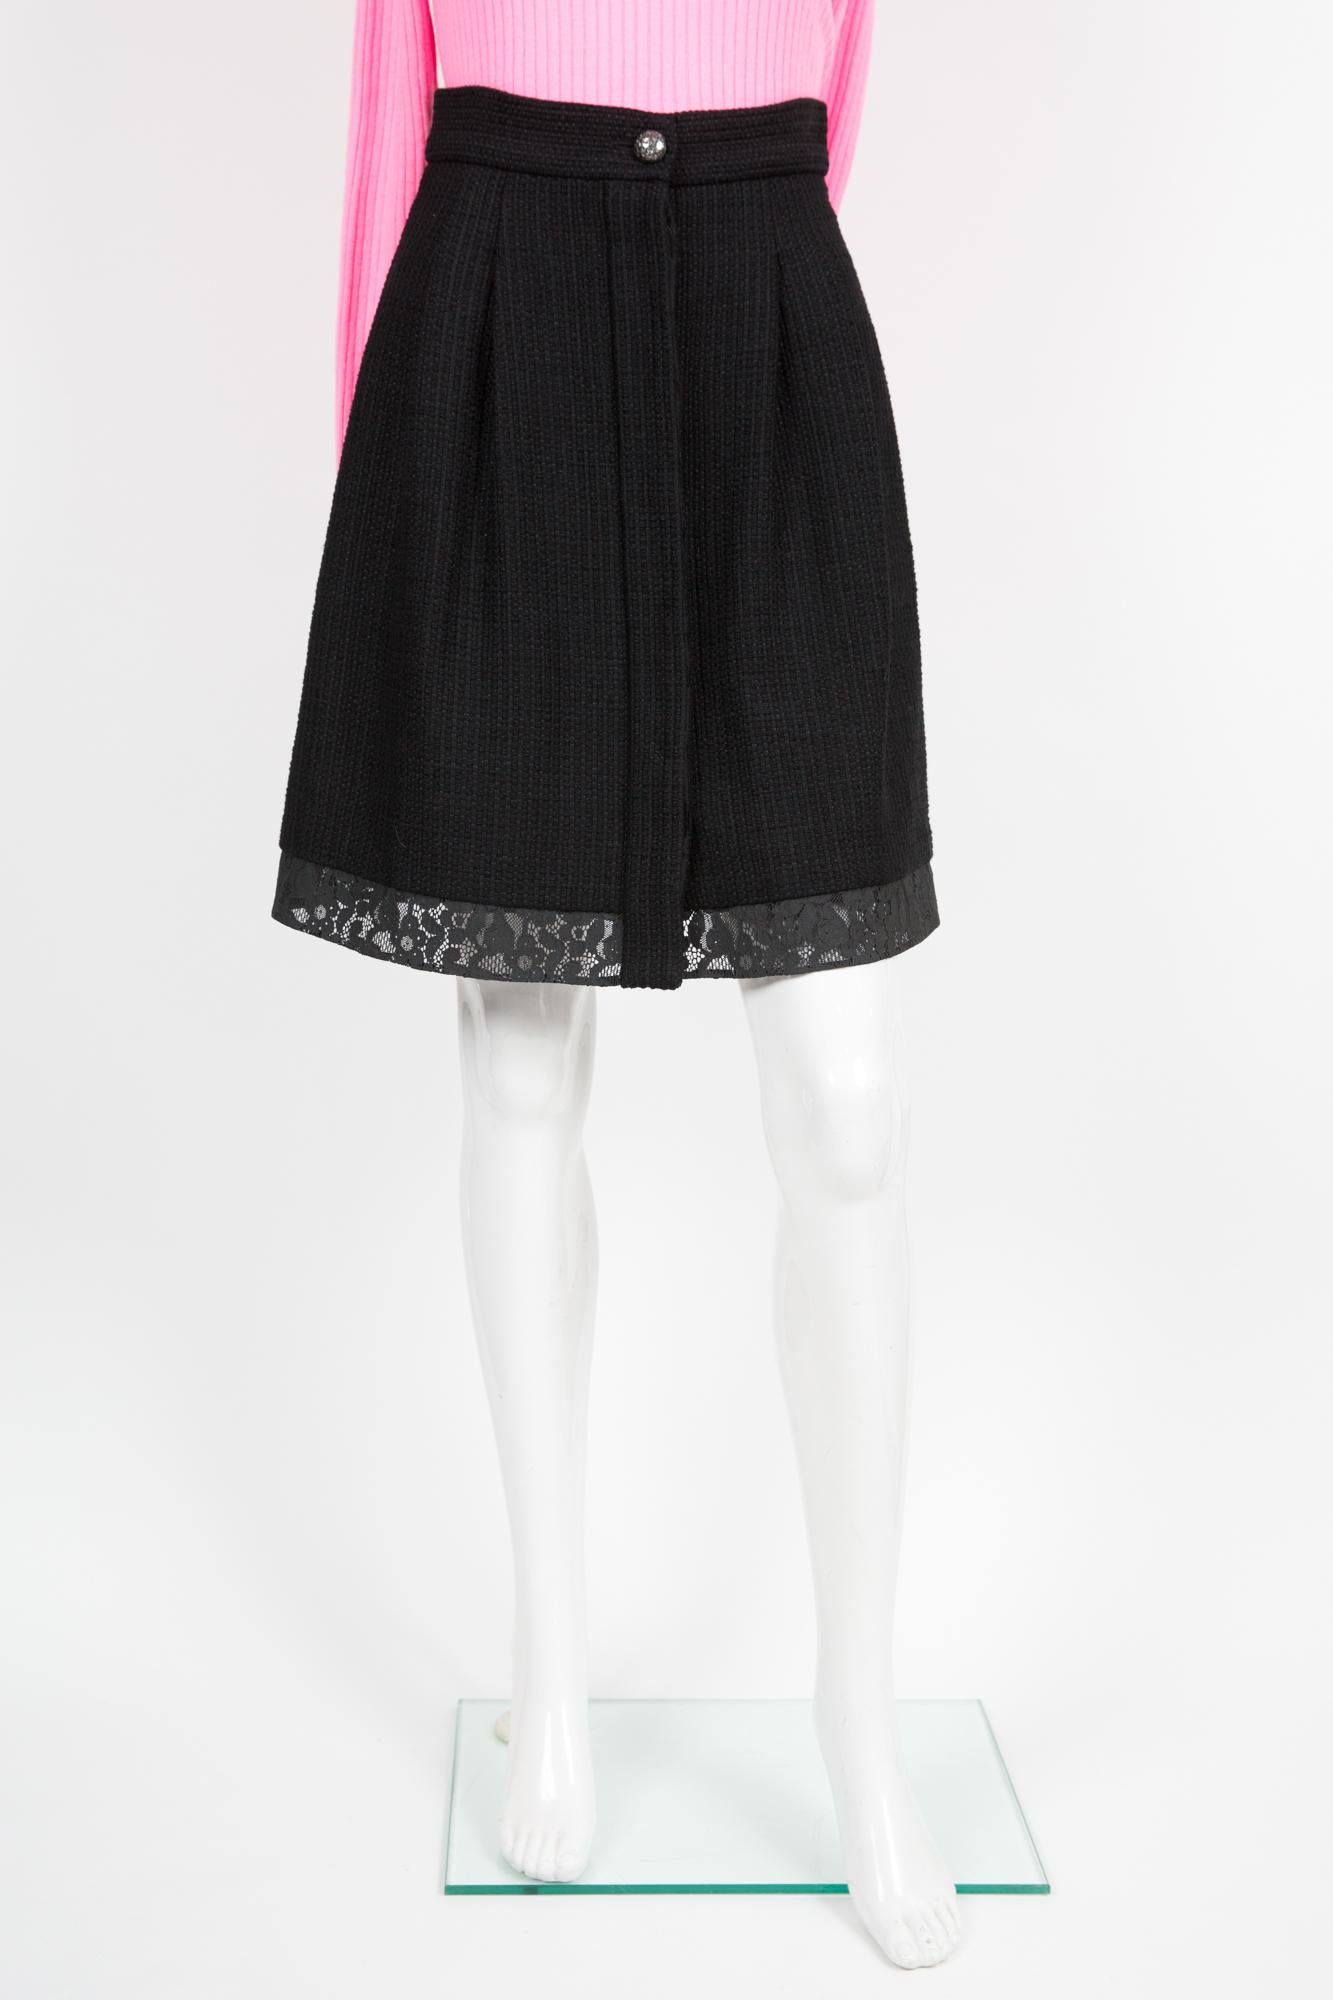 Jupe plissée en tweed fantaisie noir de Chanel, présentant une texture  en tweed de coton, une finition en dentelle au bas, un bouton fantaisie brillant à l'avant et des boutons cachés en forme de logo,  poches latérales, doublure en soie. Circa :